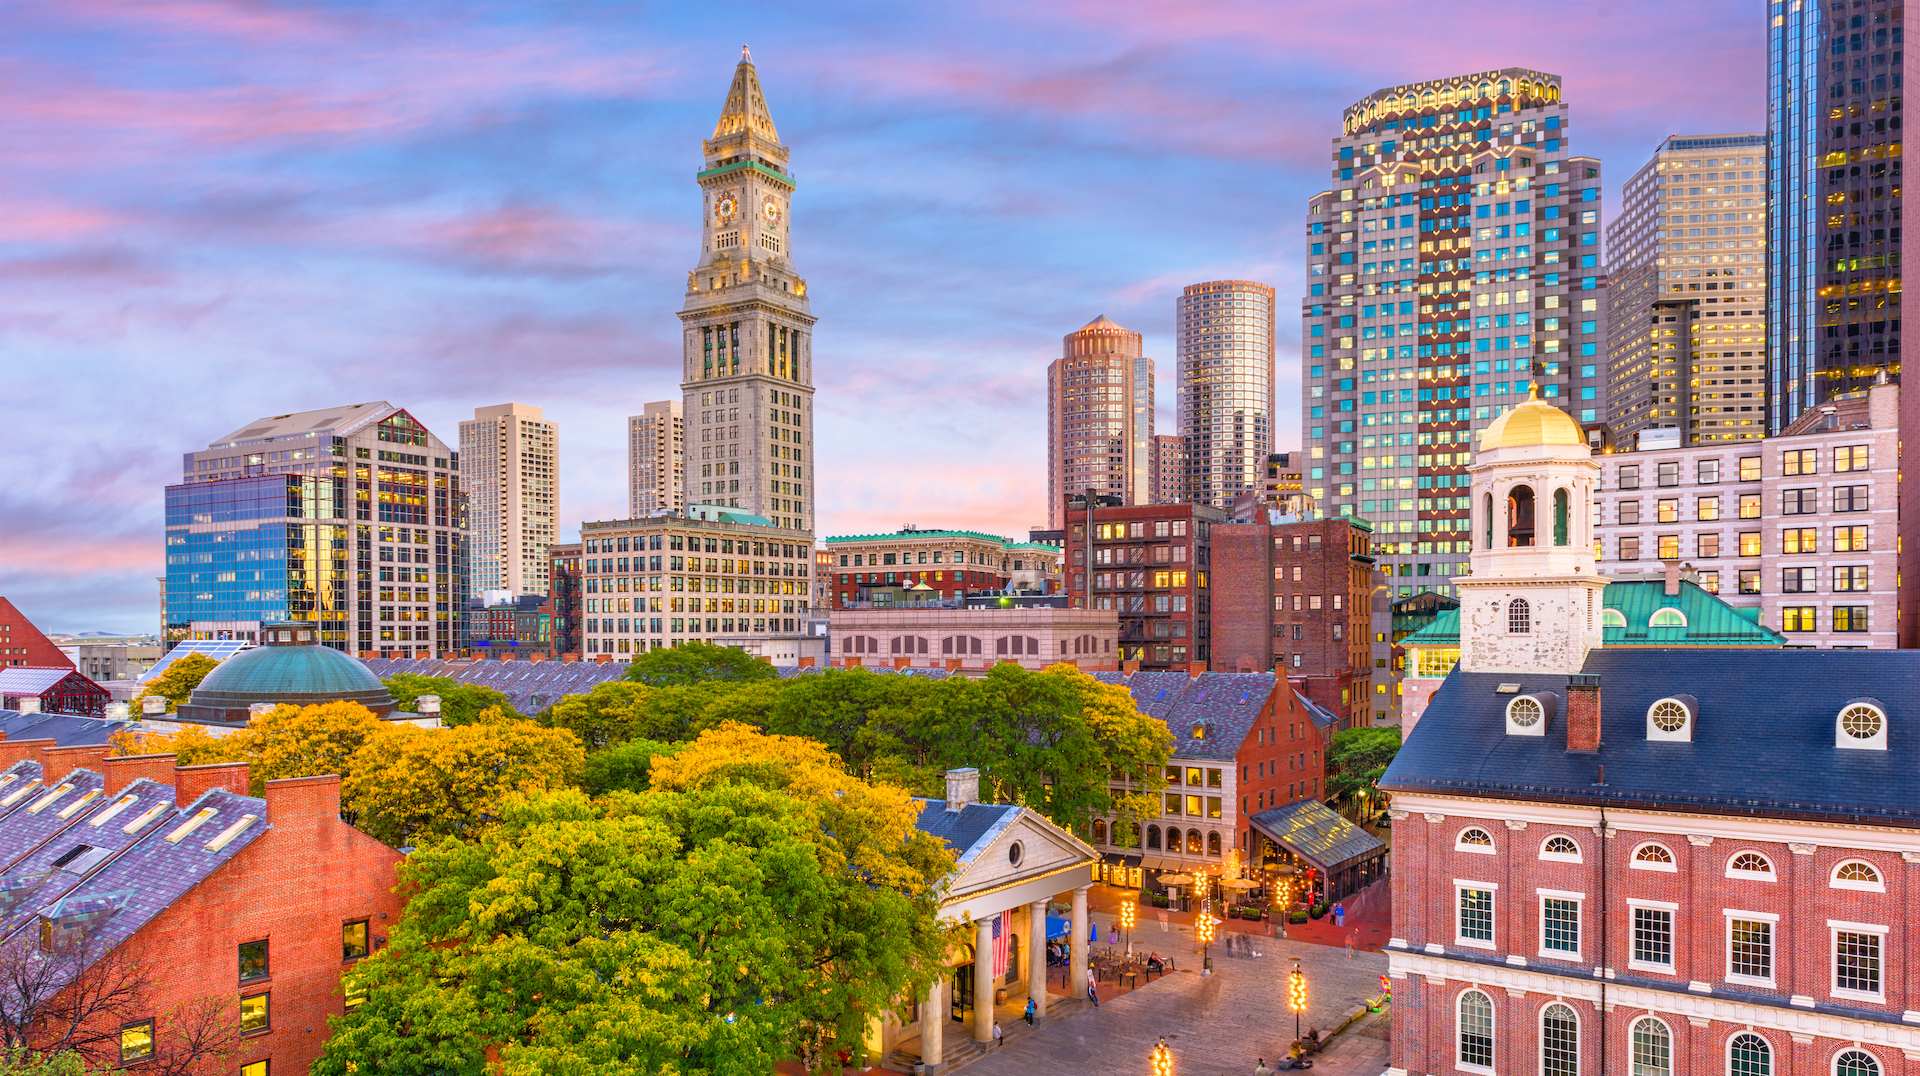 Boston, New England’s metropolis